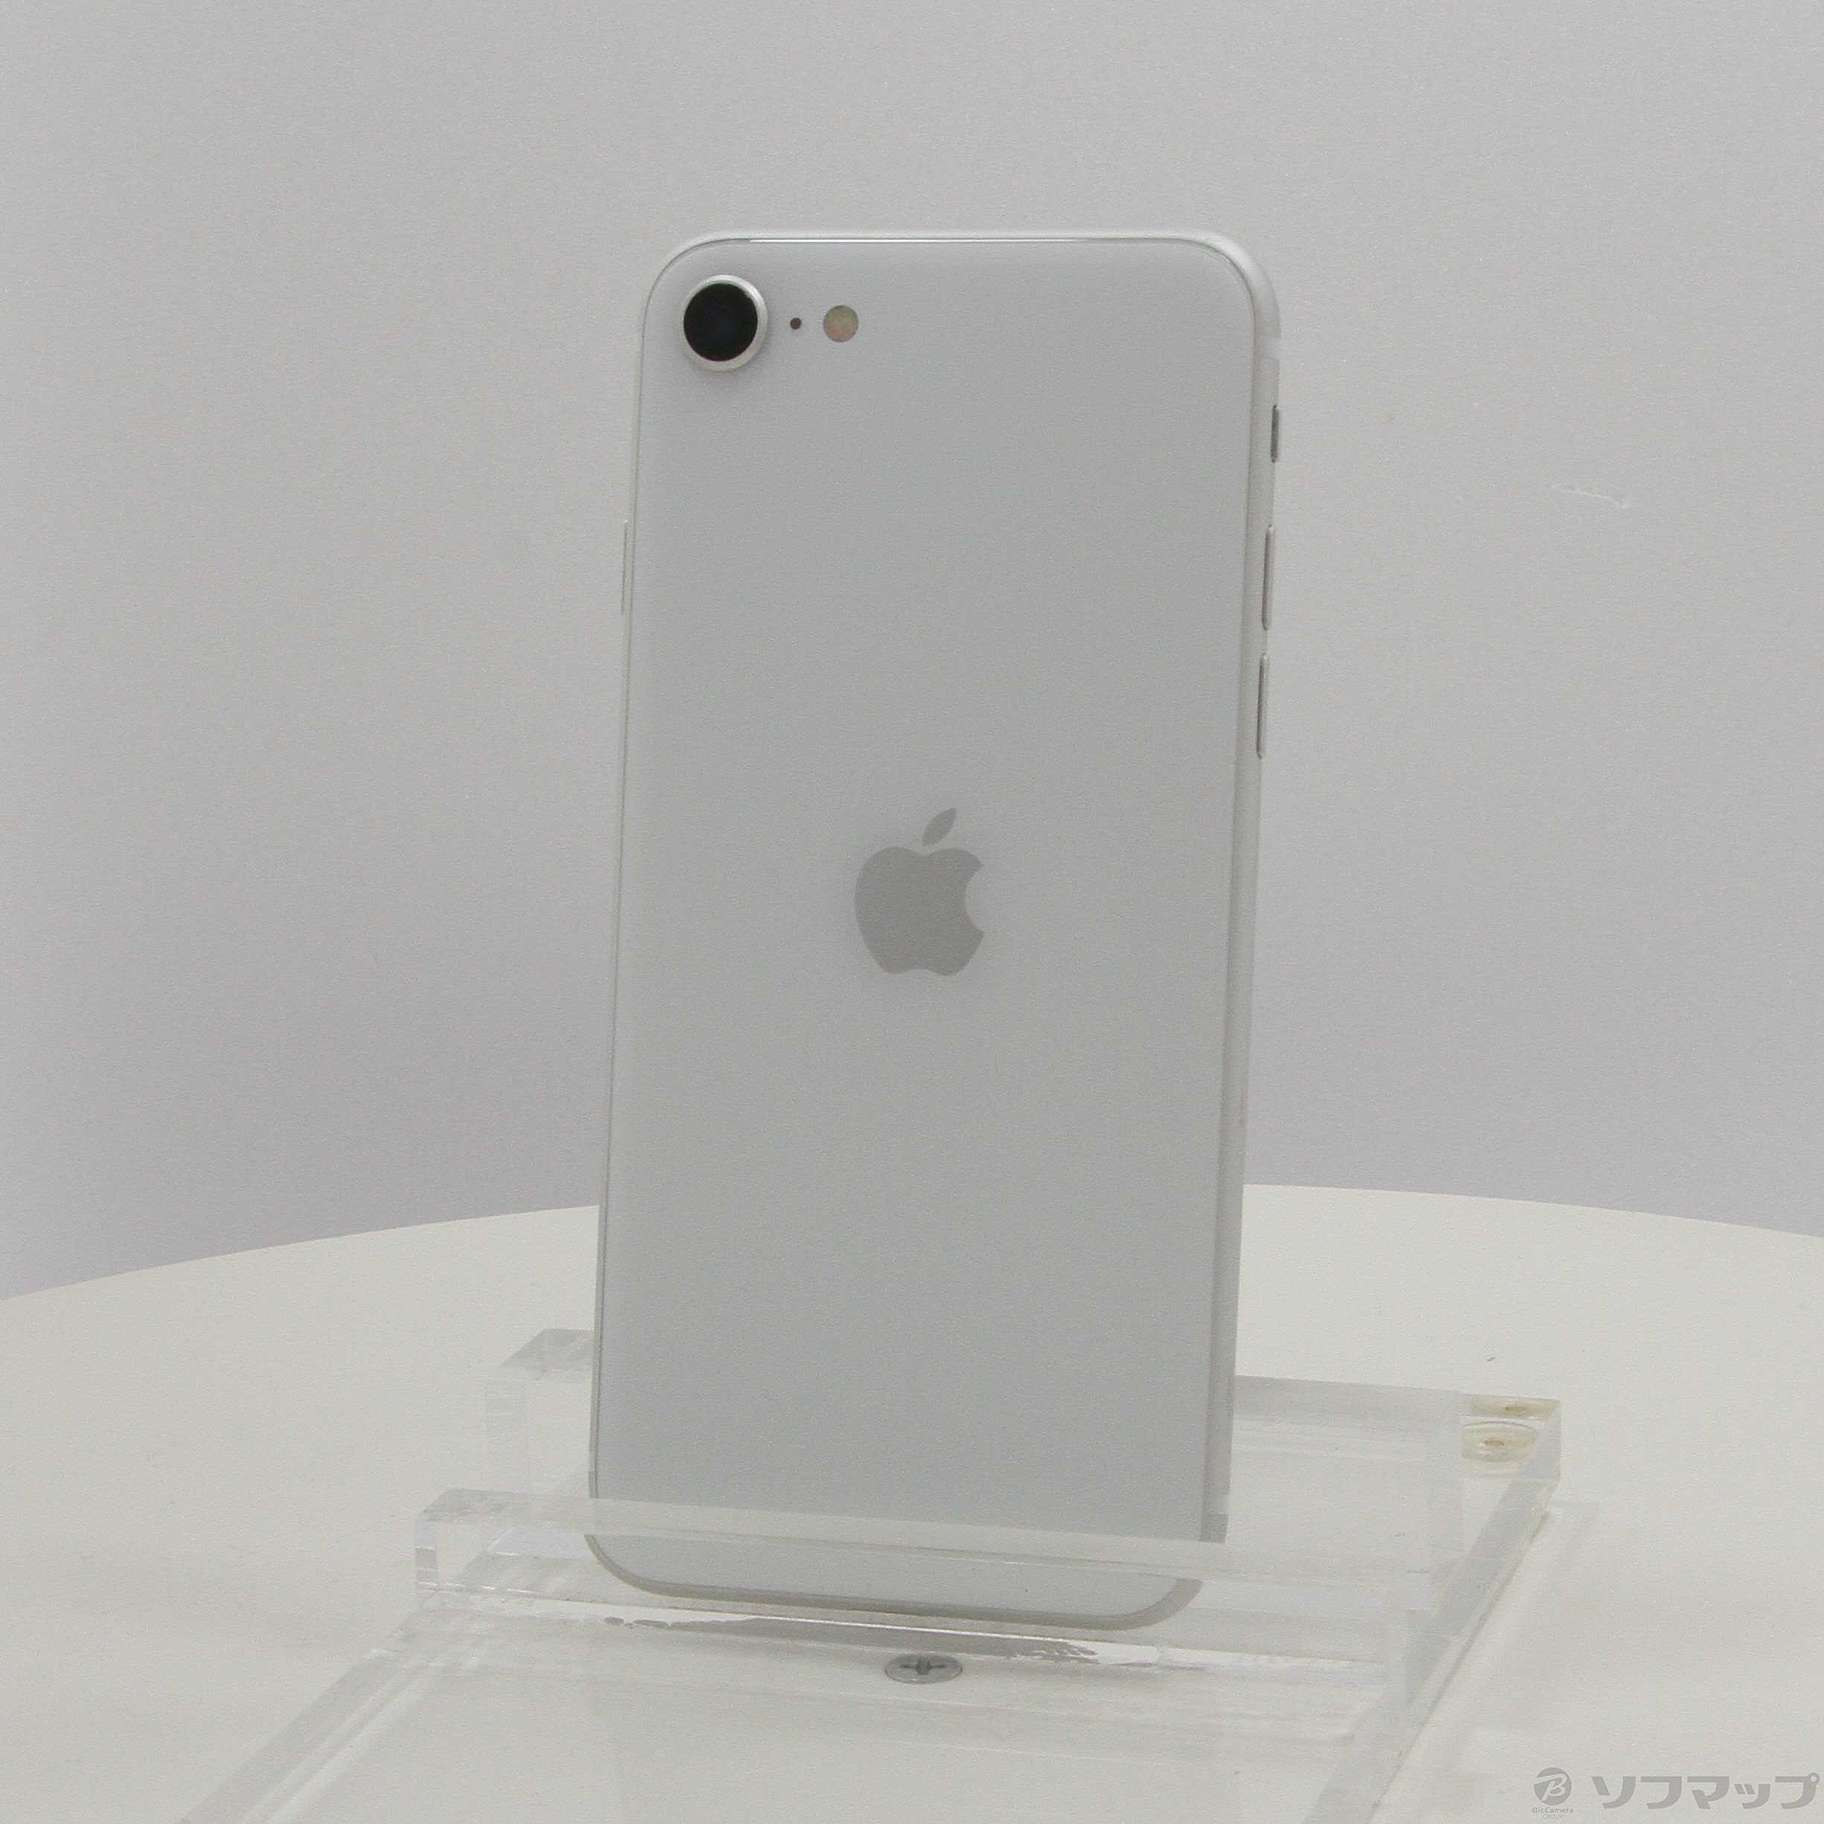 iPhone SE 第2世代 128GB 黒 Apple アップル SIMフリー-